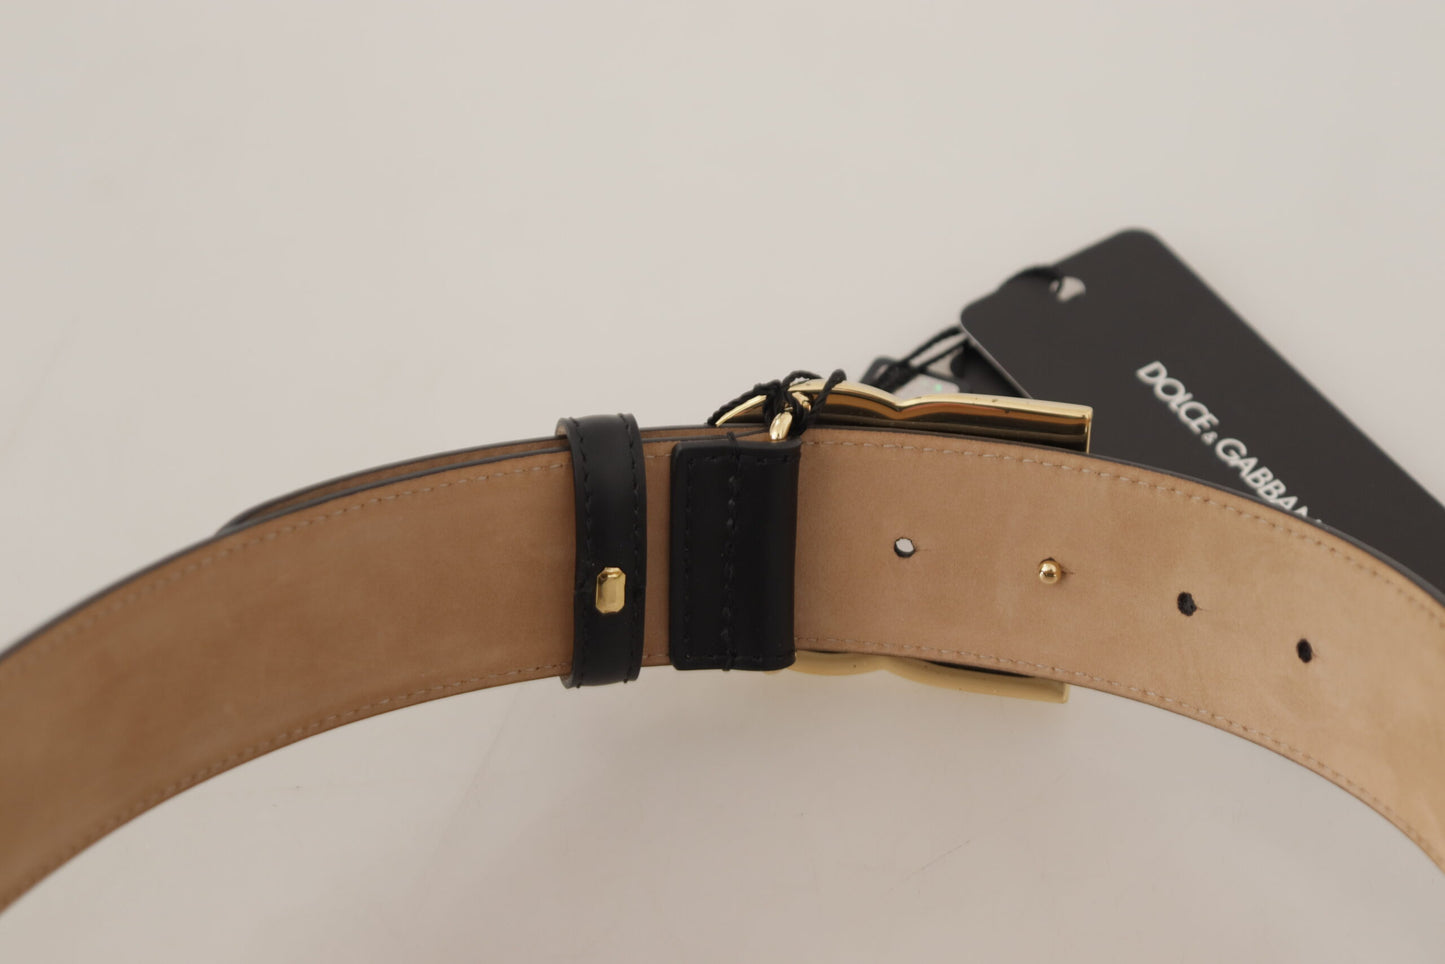 Elegant Black Leather Belt with Engraved Buckle